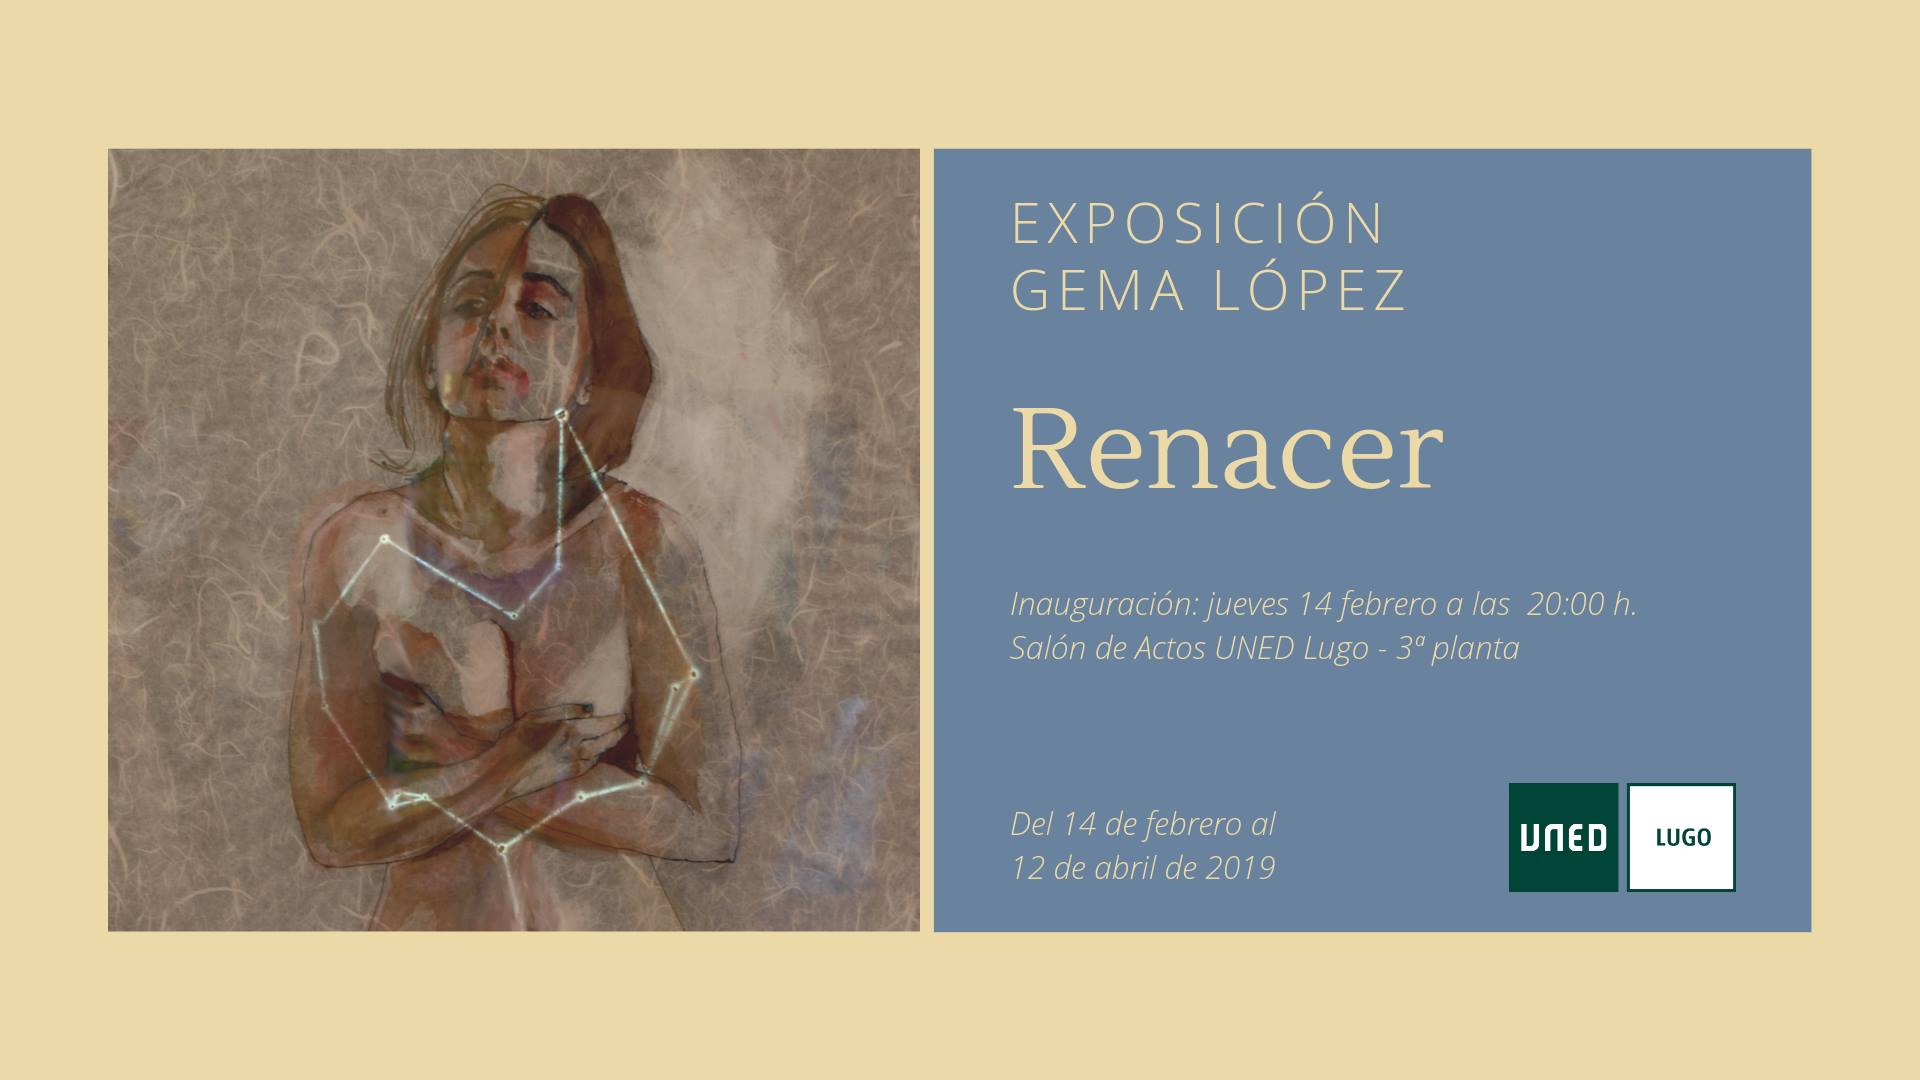 Inauguración de la exposición "Renacer" de Gema López